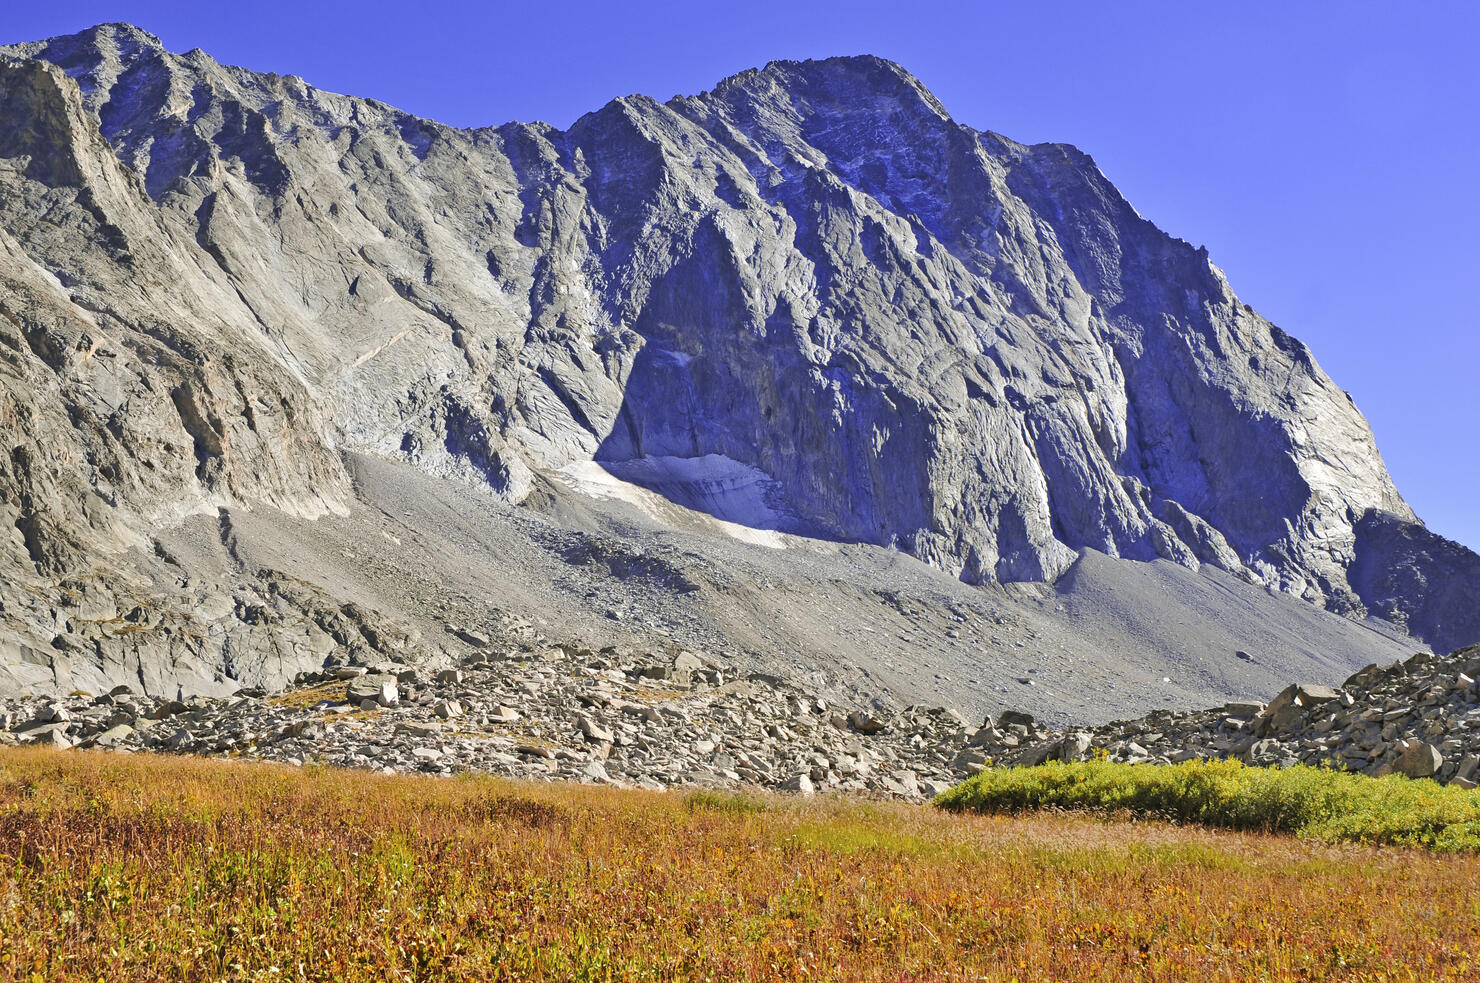 Colorado 14er, Capitol Peak in Autumn colors, Elk Range